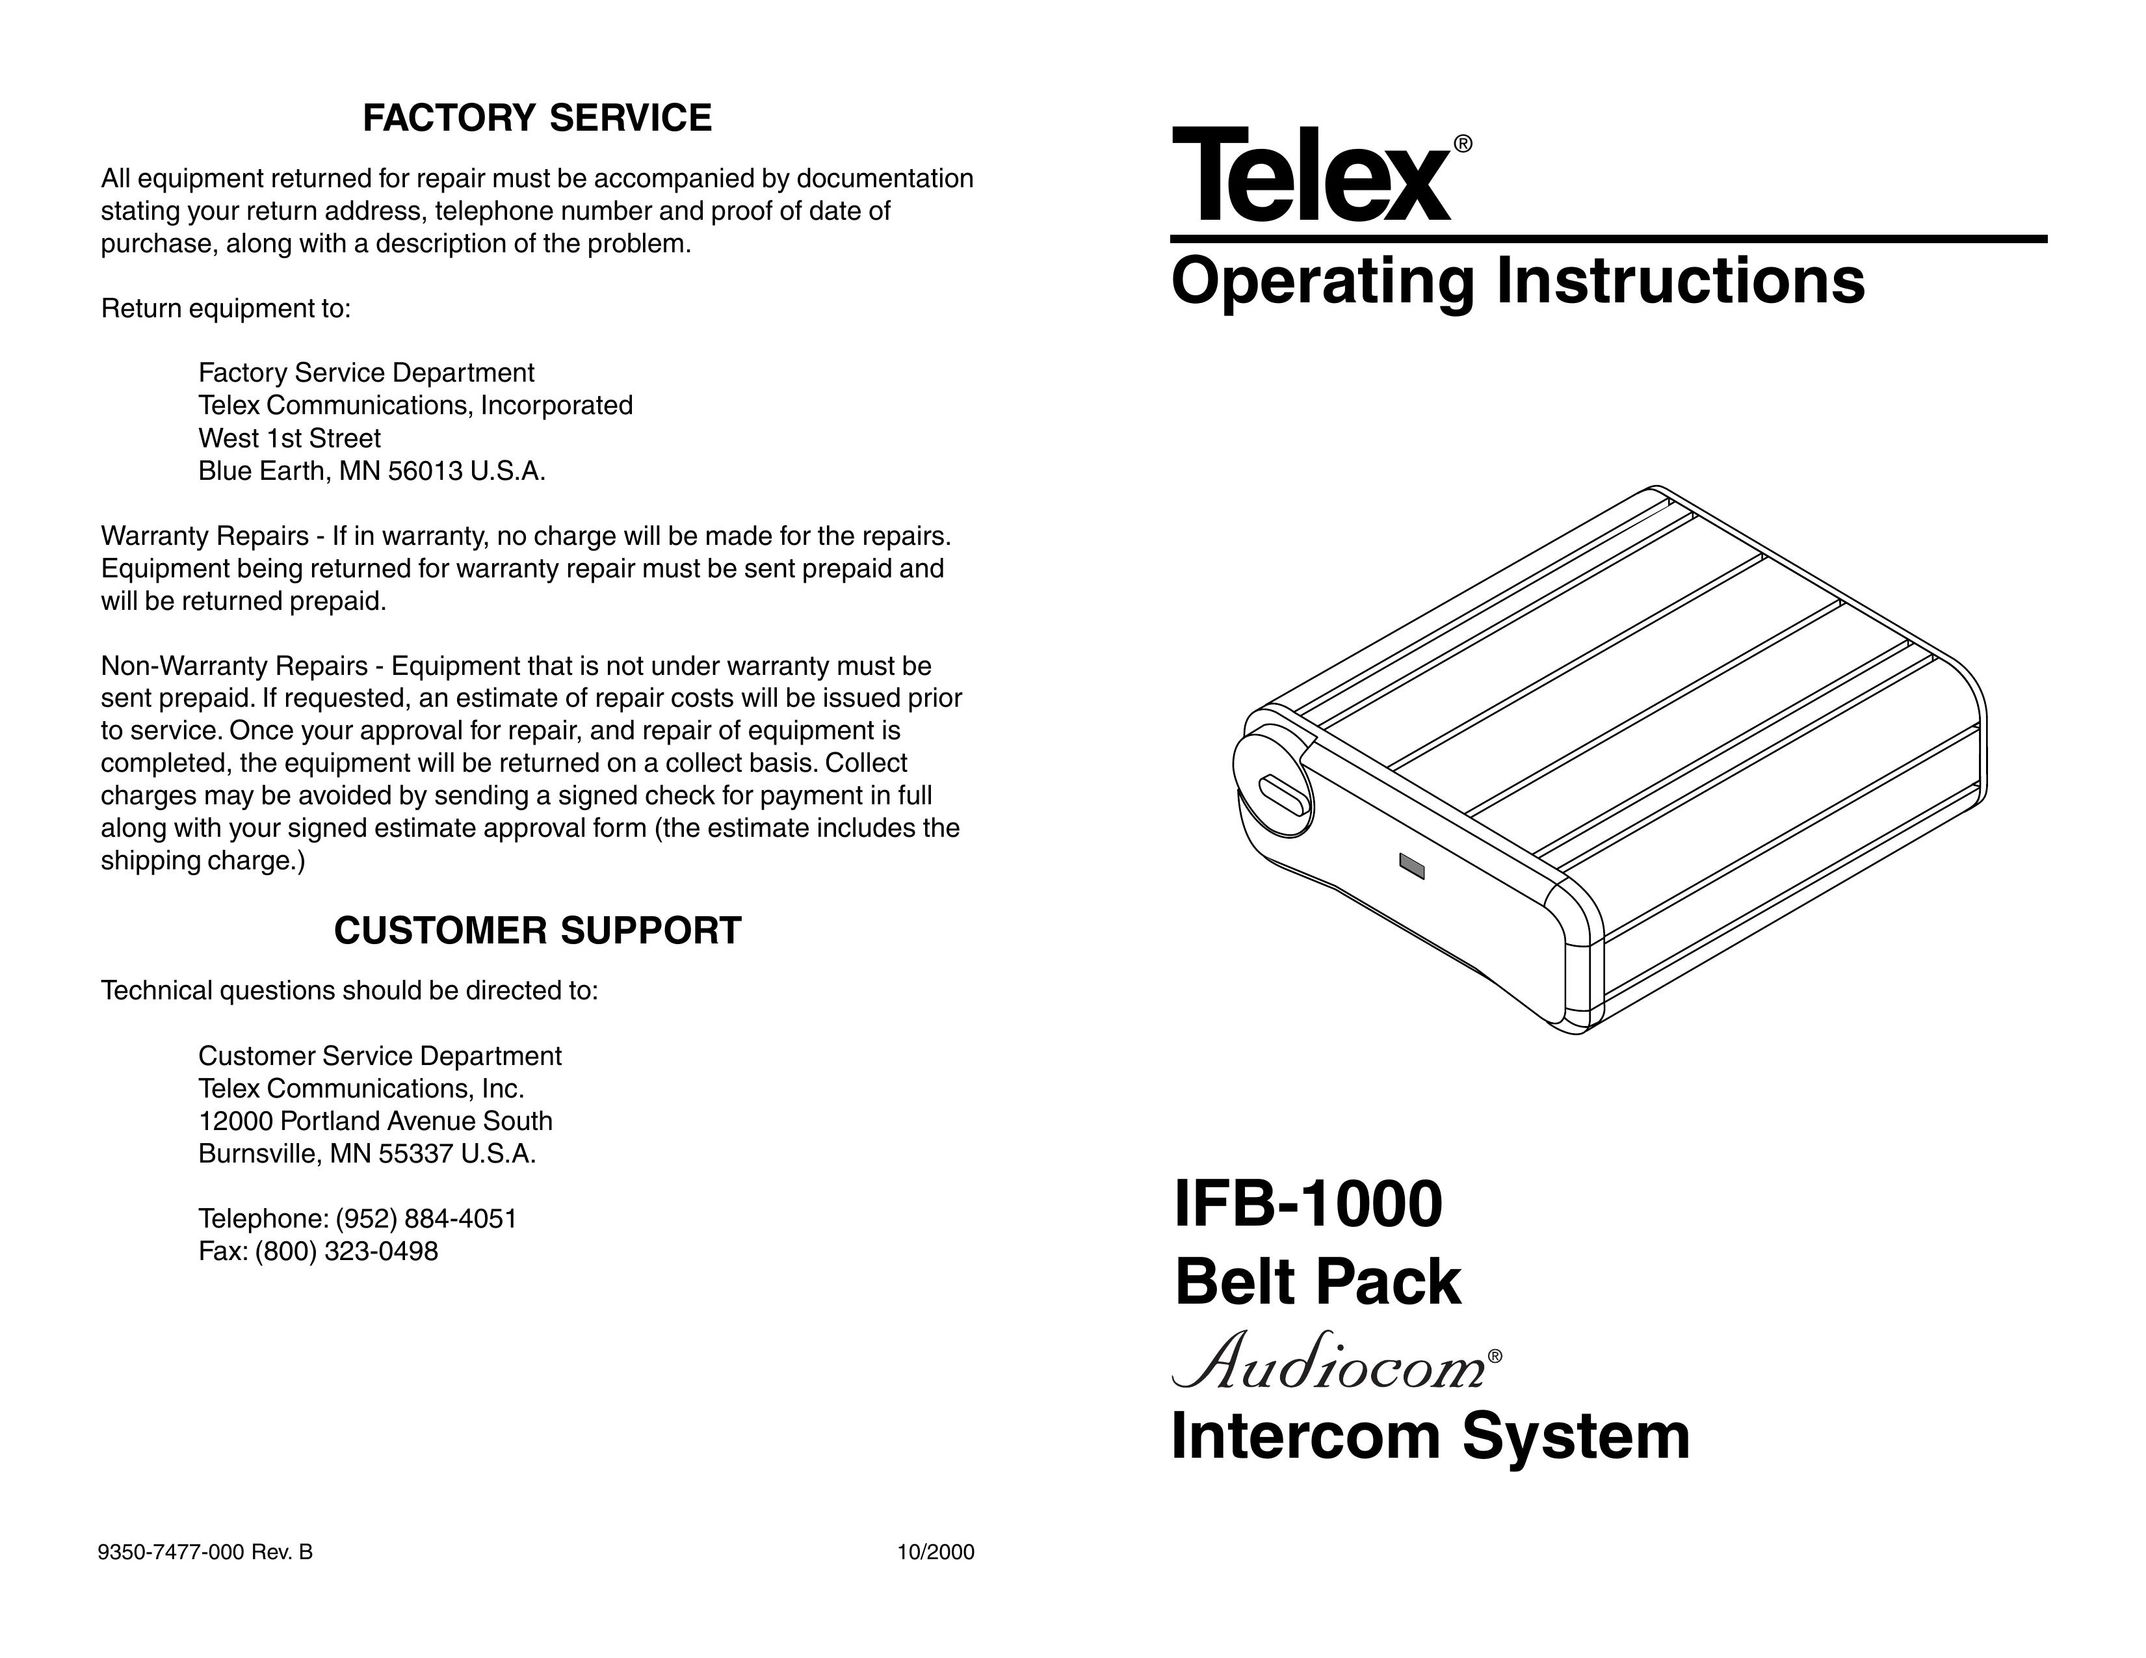 Telex IFB-1000 Intercom System User Manual